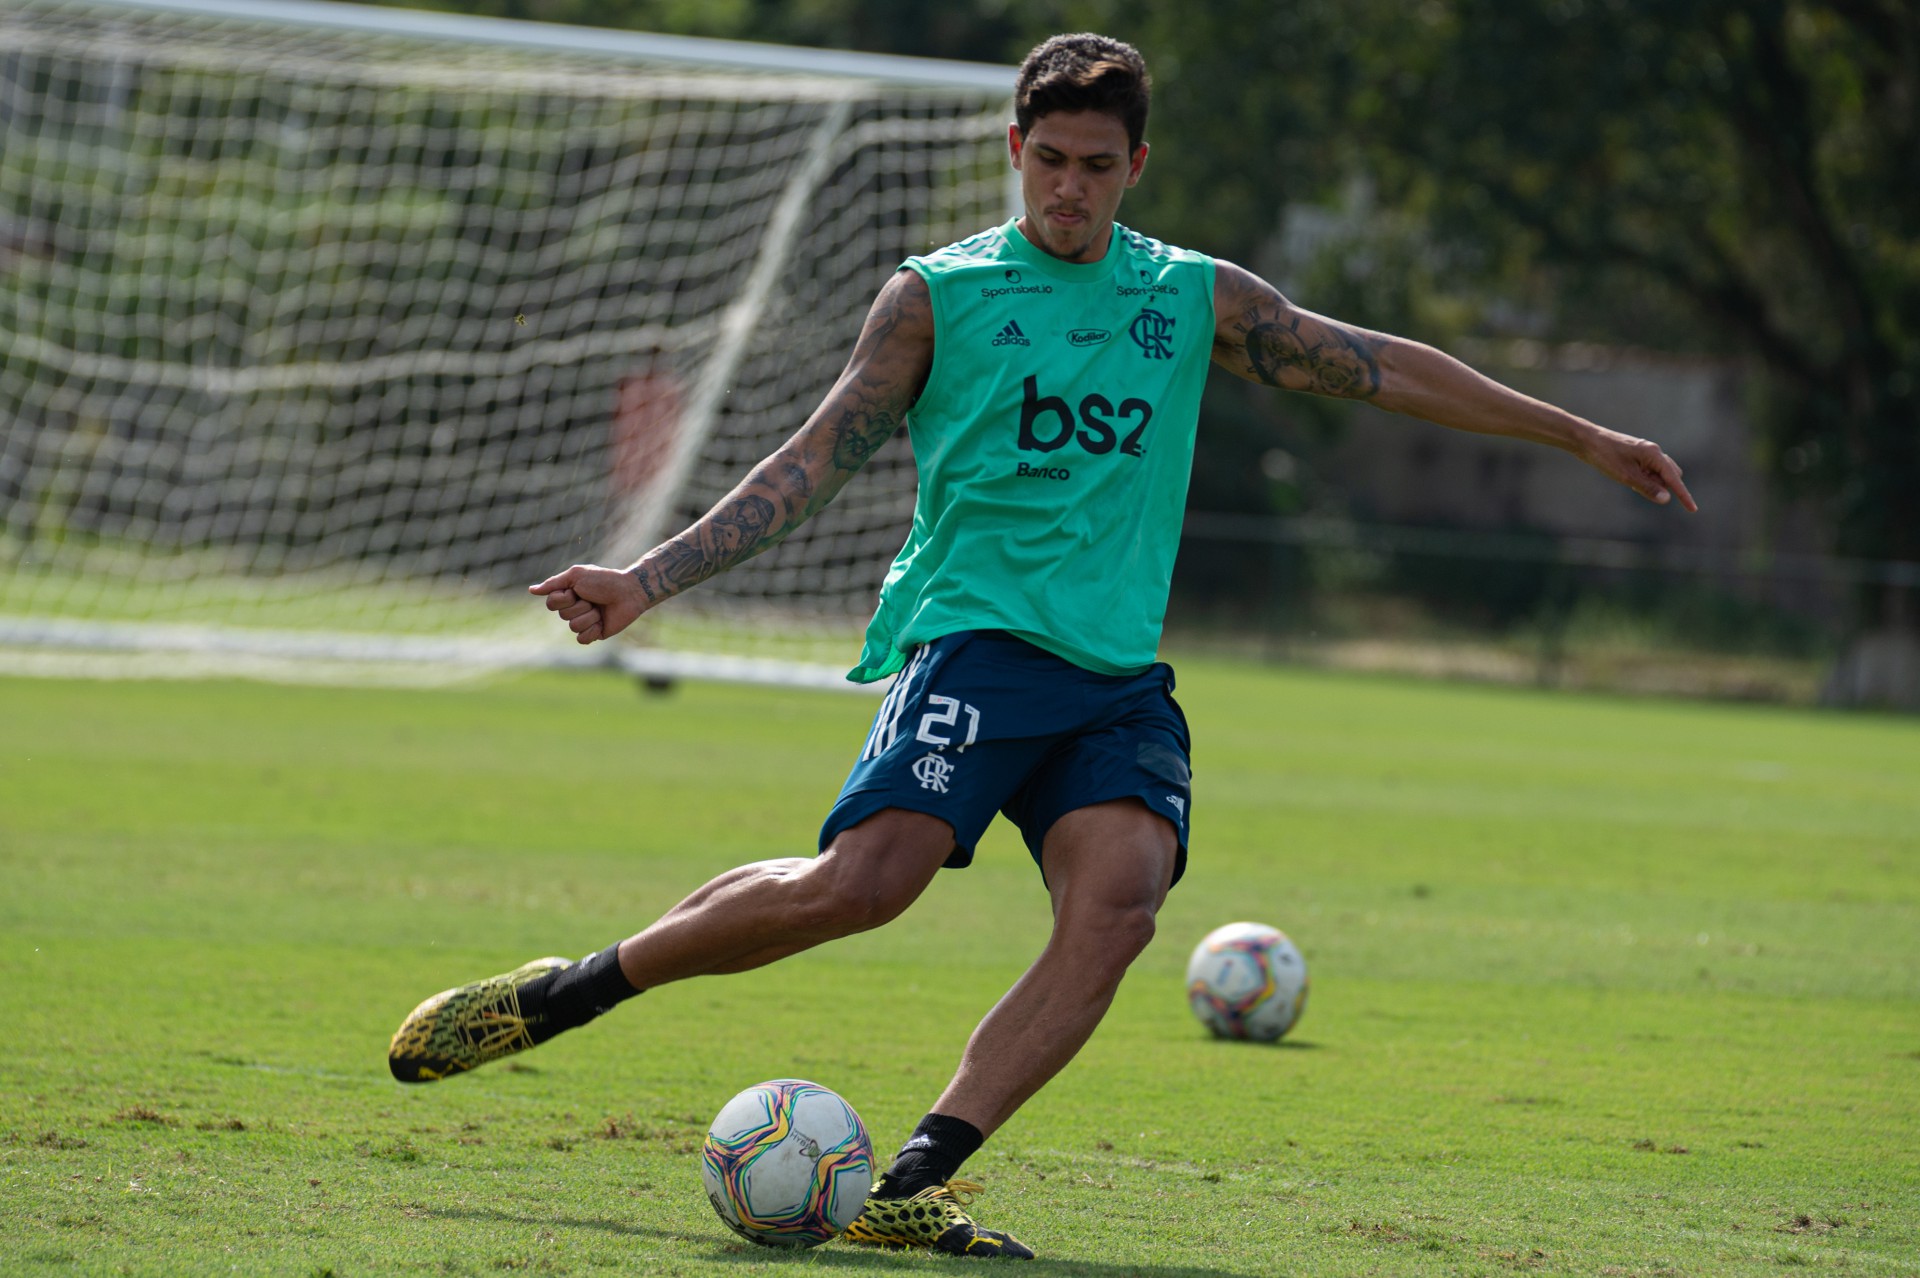 Pedro brilhou com dois gols contra o Sport e vive grande fase - Alexandre Vidal / Flamengo